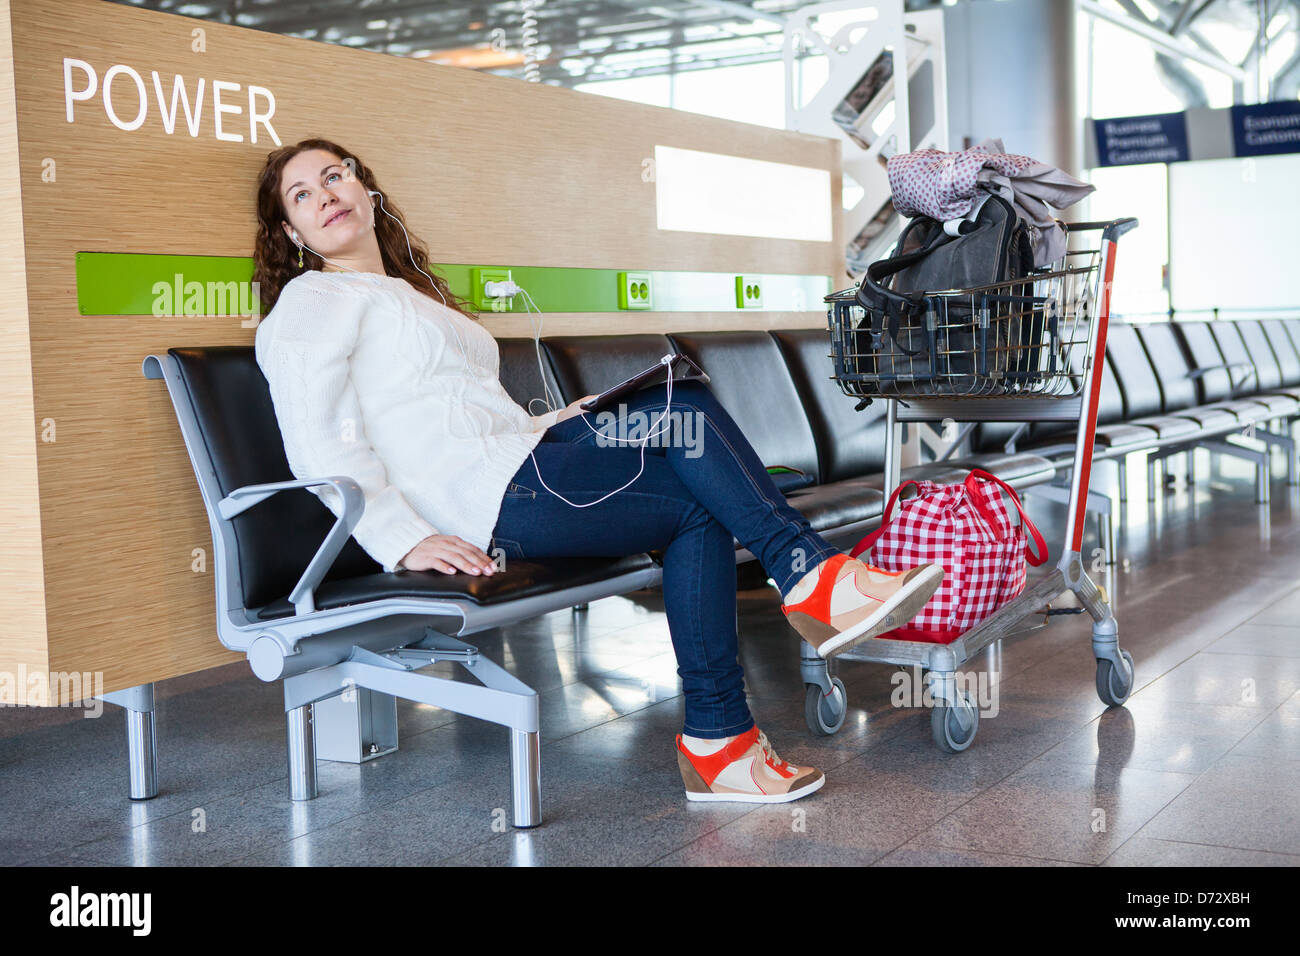 Weiblich, verbringt Zeit mit Tablet-pc in Flughafen-Lounge mit Hand-Gepäckwagen. Platz für Aufladen Ihres Handys und Geräte Stockfoto